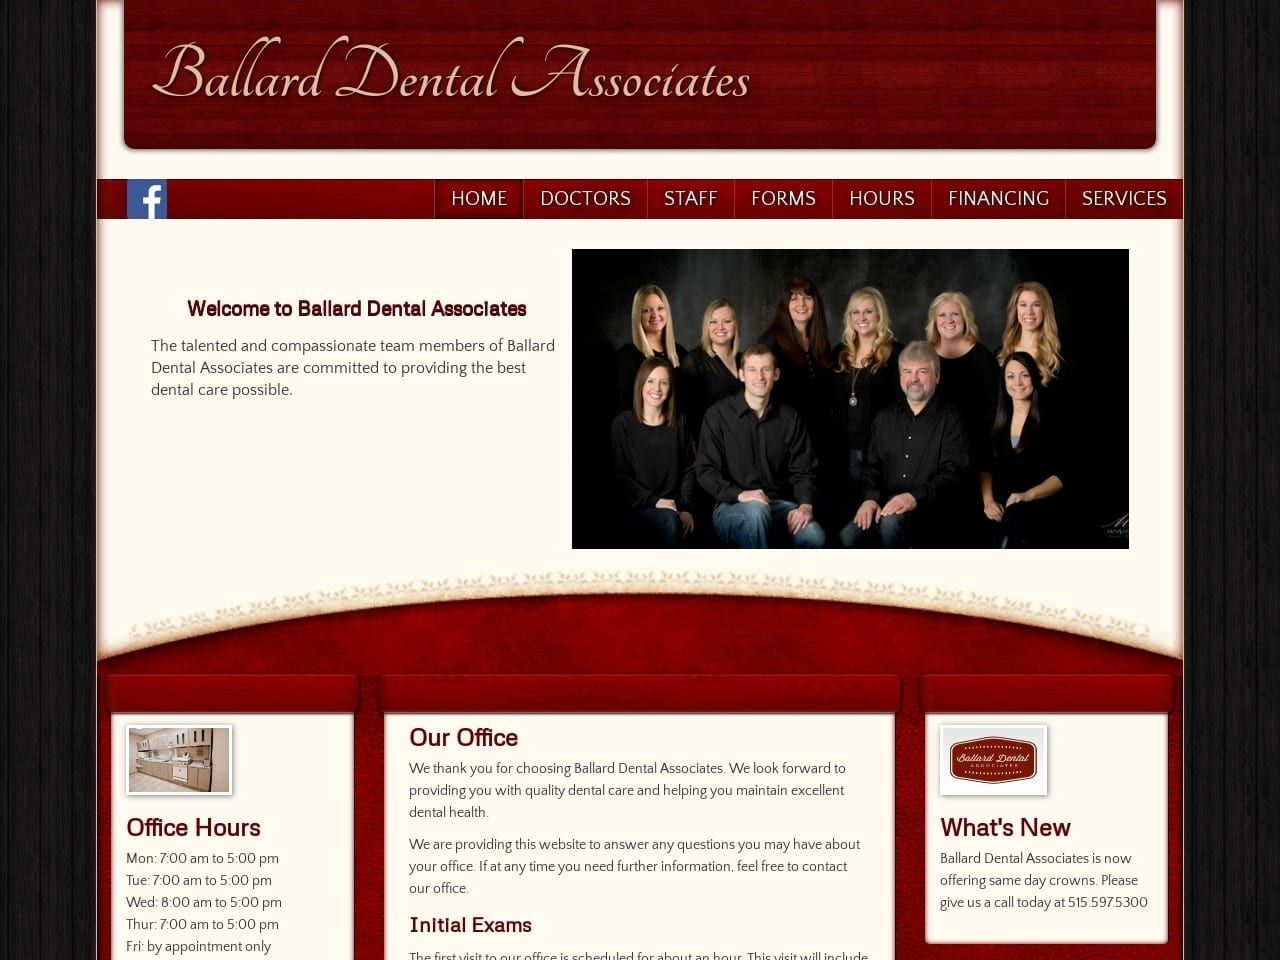 Ballard Dental Associates Website Screenshot from ballarddentalassociates.com